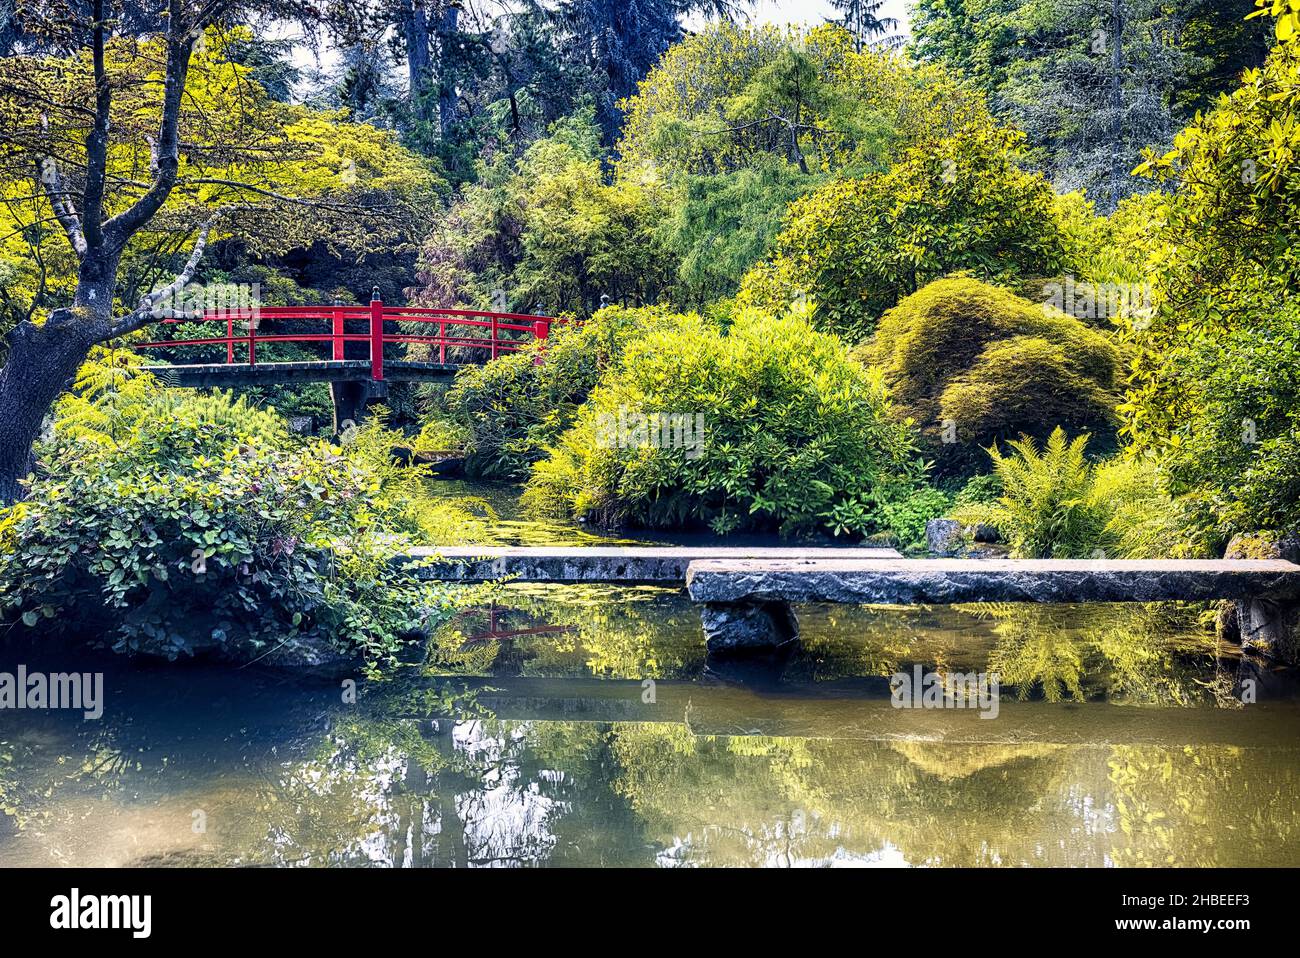 Vista de una primavera con un puente peatonal japonés curvo rojo, jardines Kubota, sur de Seattle, estado de Washington Foto de stock